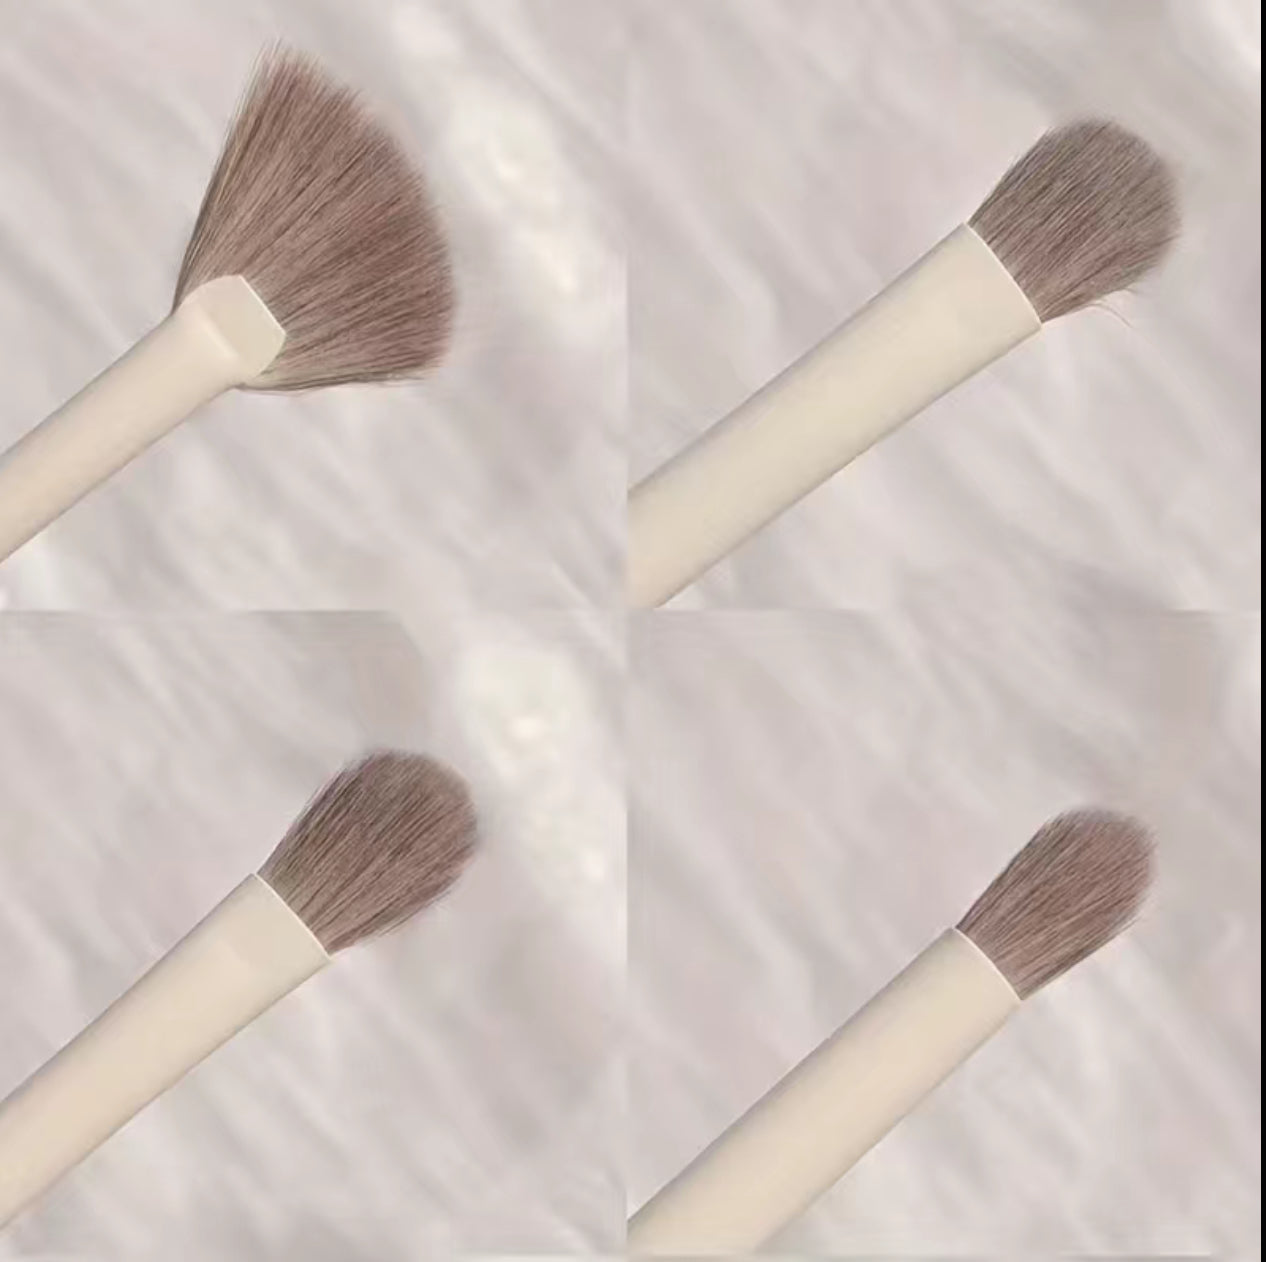 10pc Makeup Brush Set